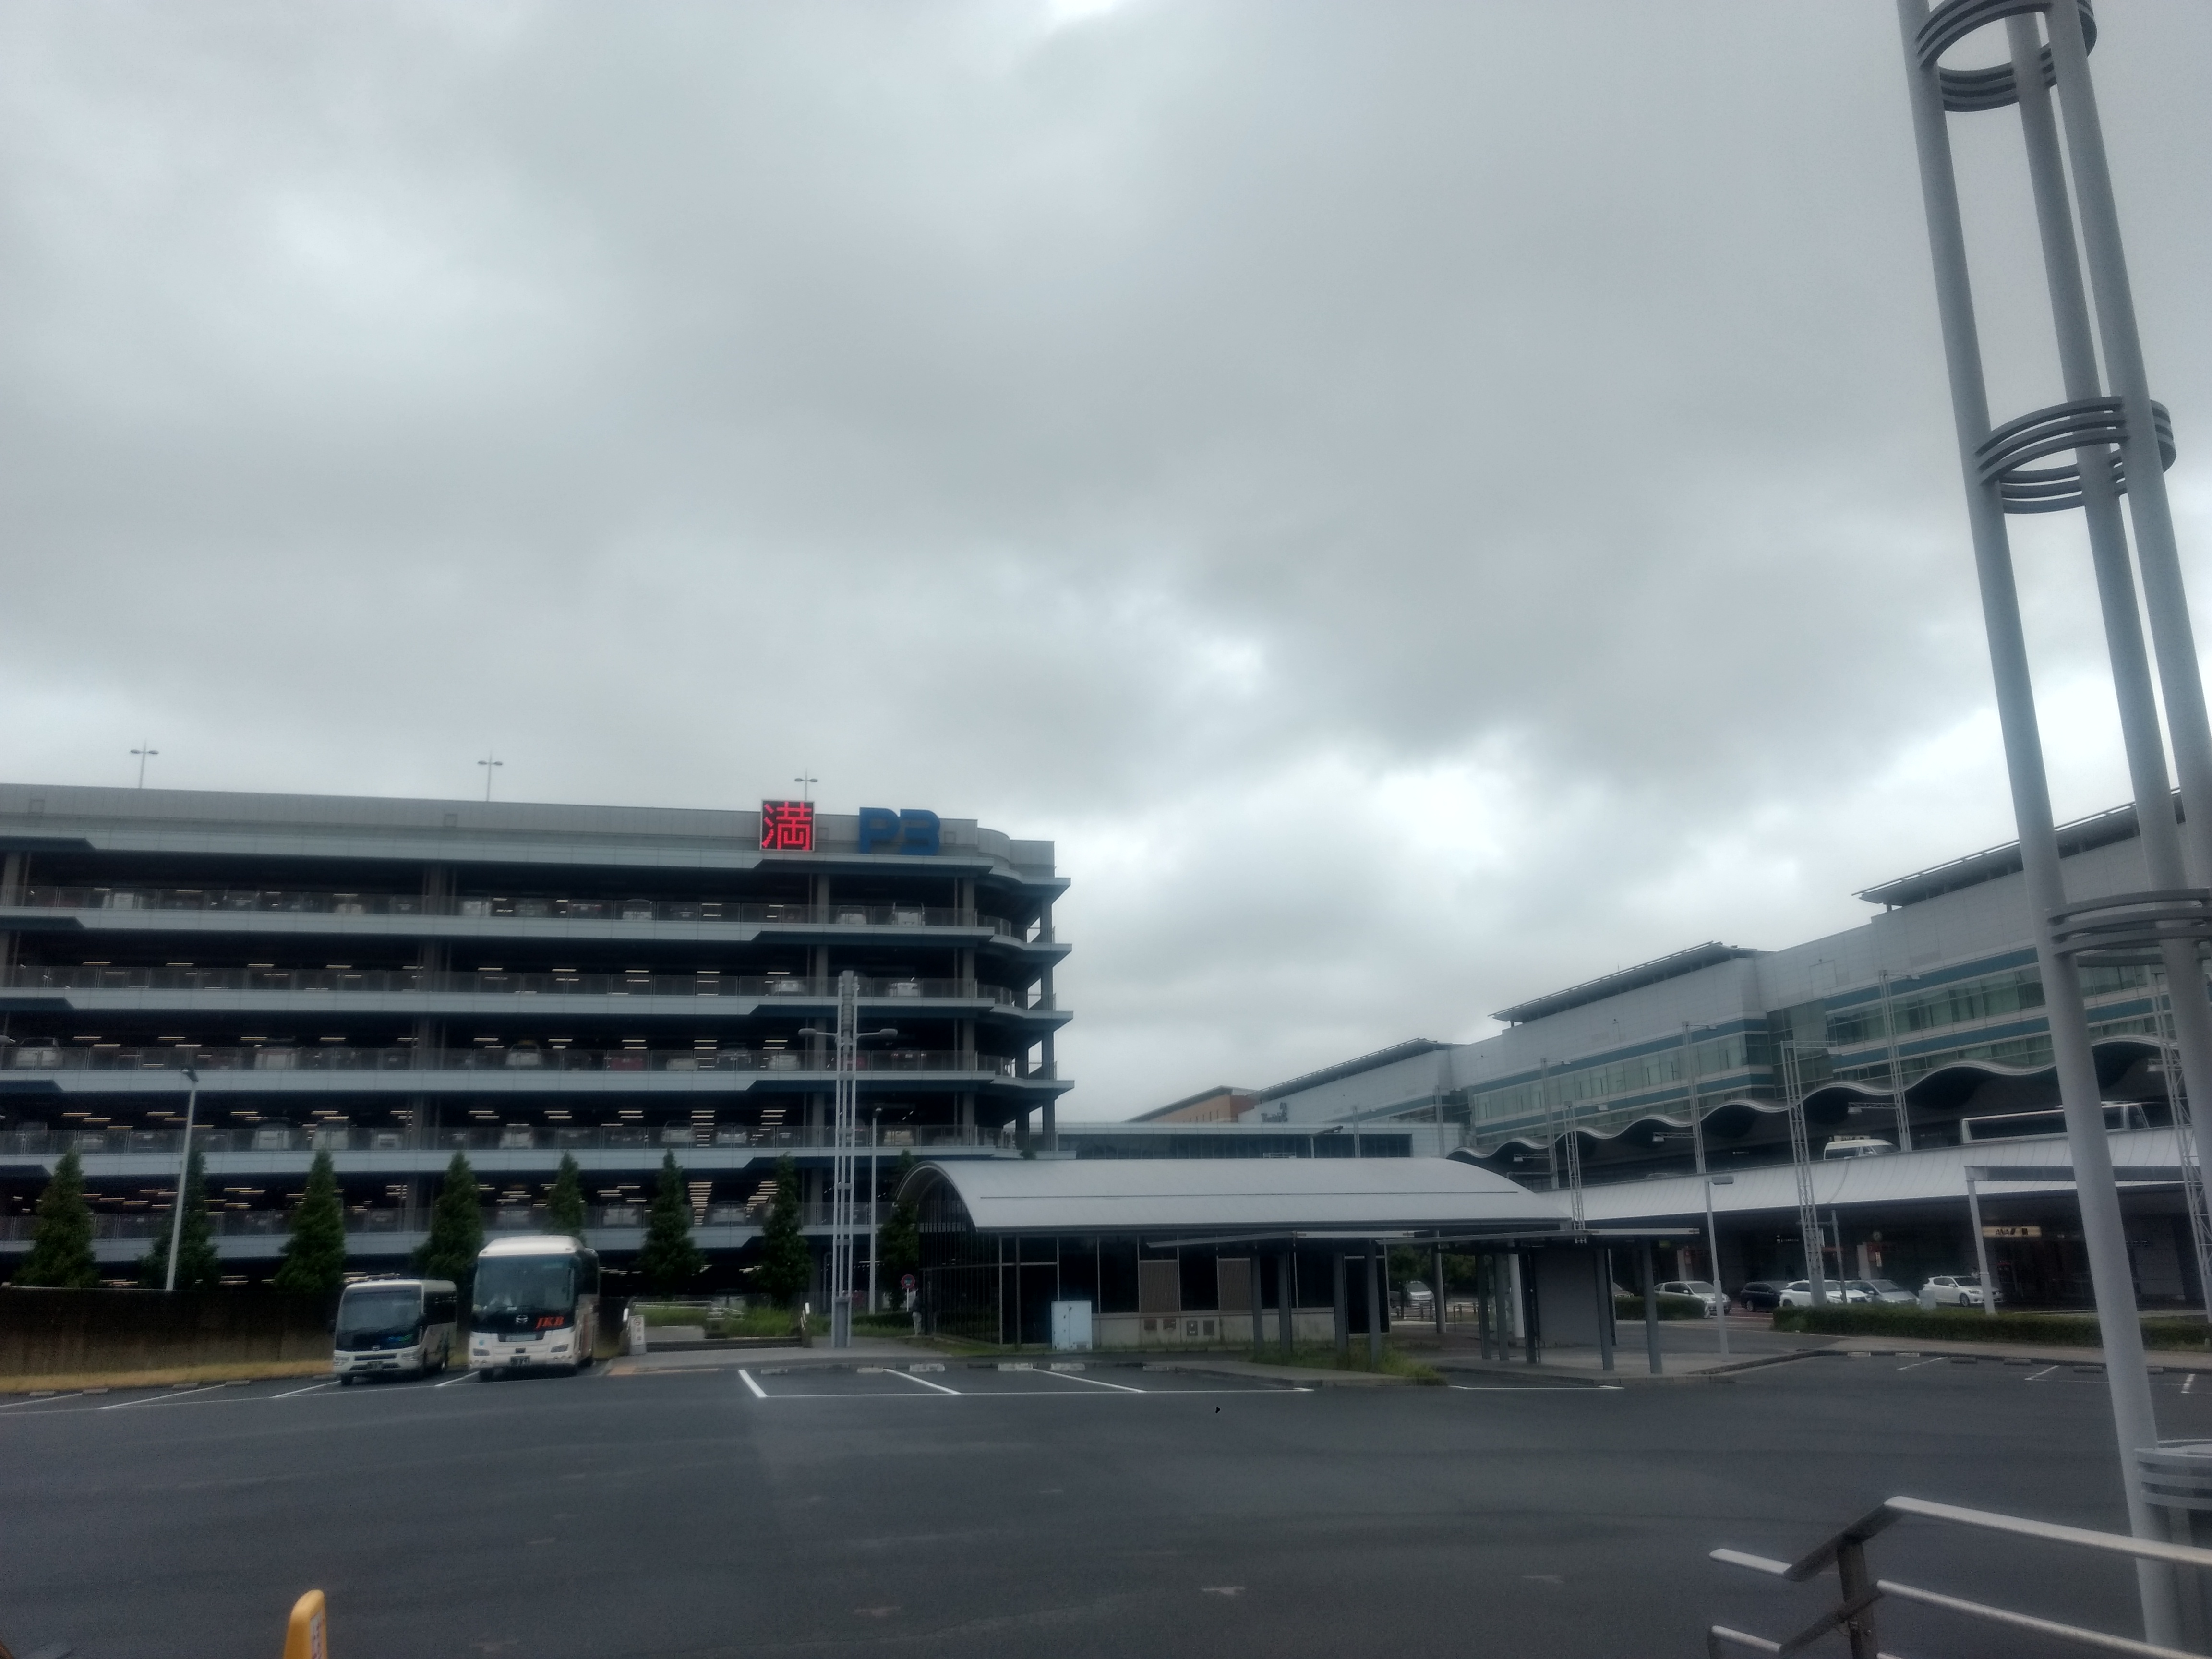 夏休みの羽田空港の駐車場は大混雑 早めの予約が大切な理由 しがないサラリーマンがひっそりと経済的自由を目論むブログ